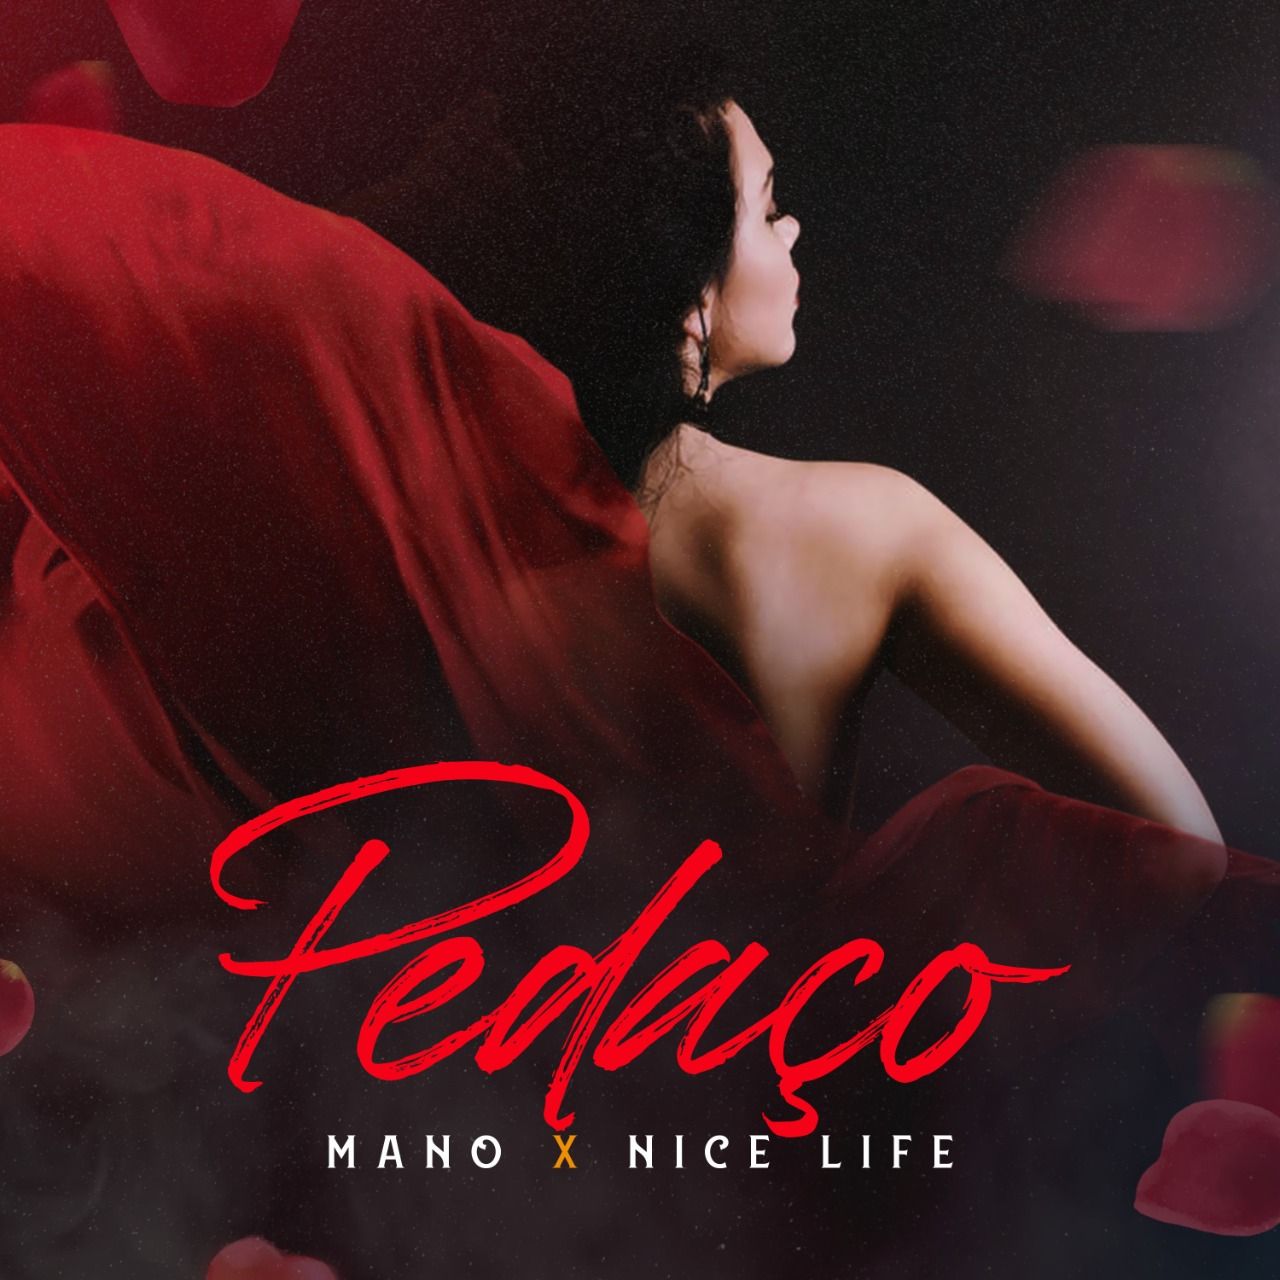 Скачать Mano X Nice Life - Pedaco